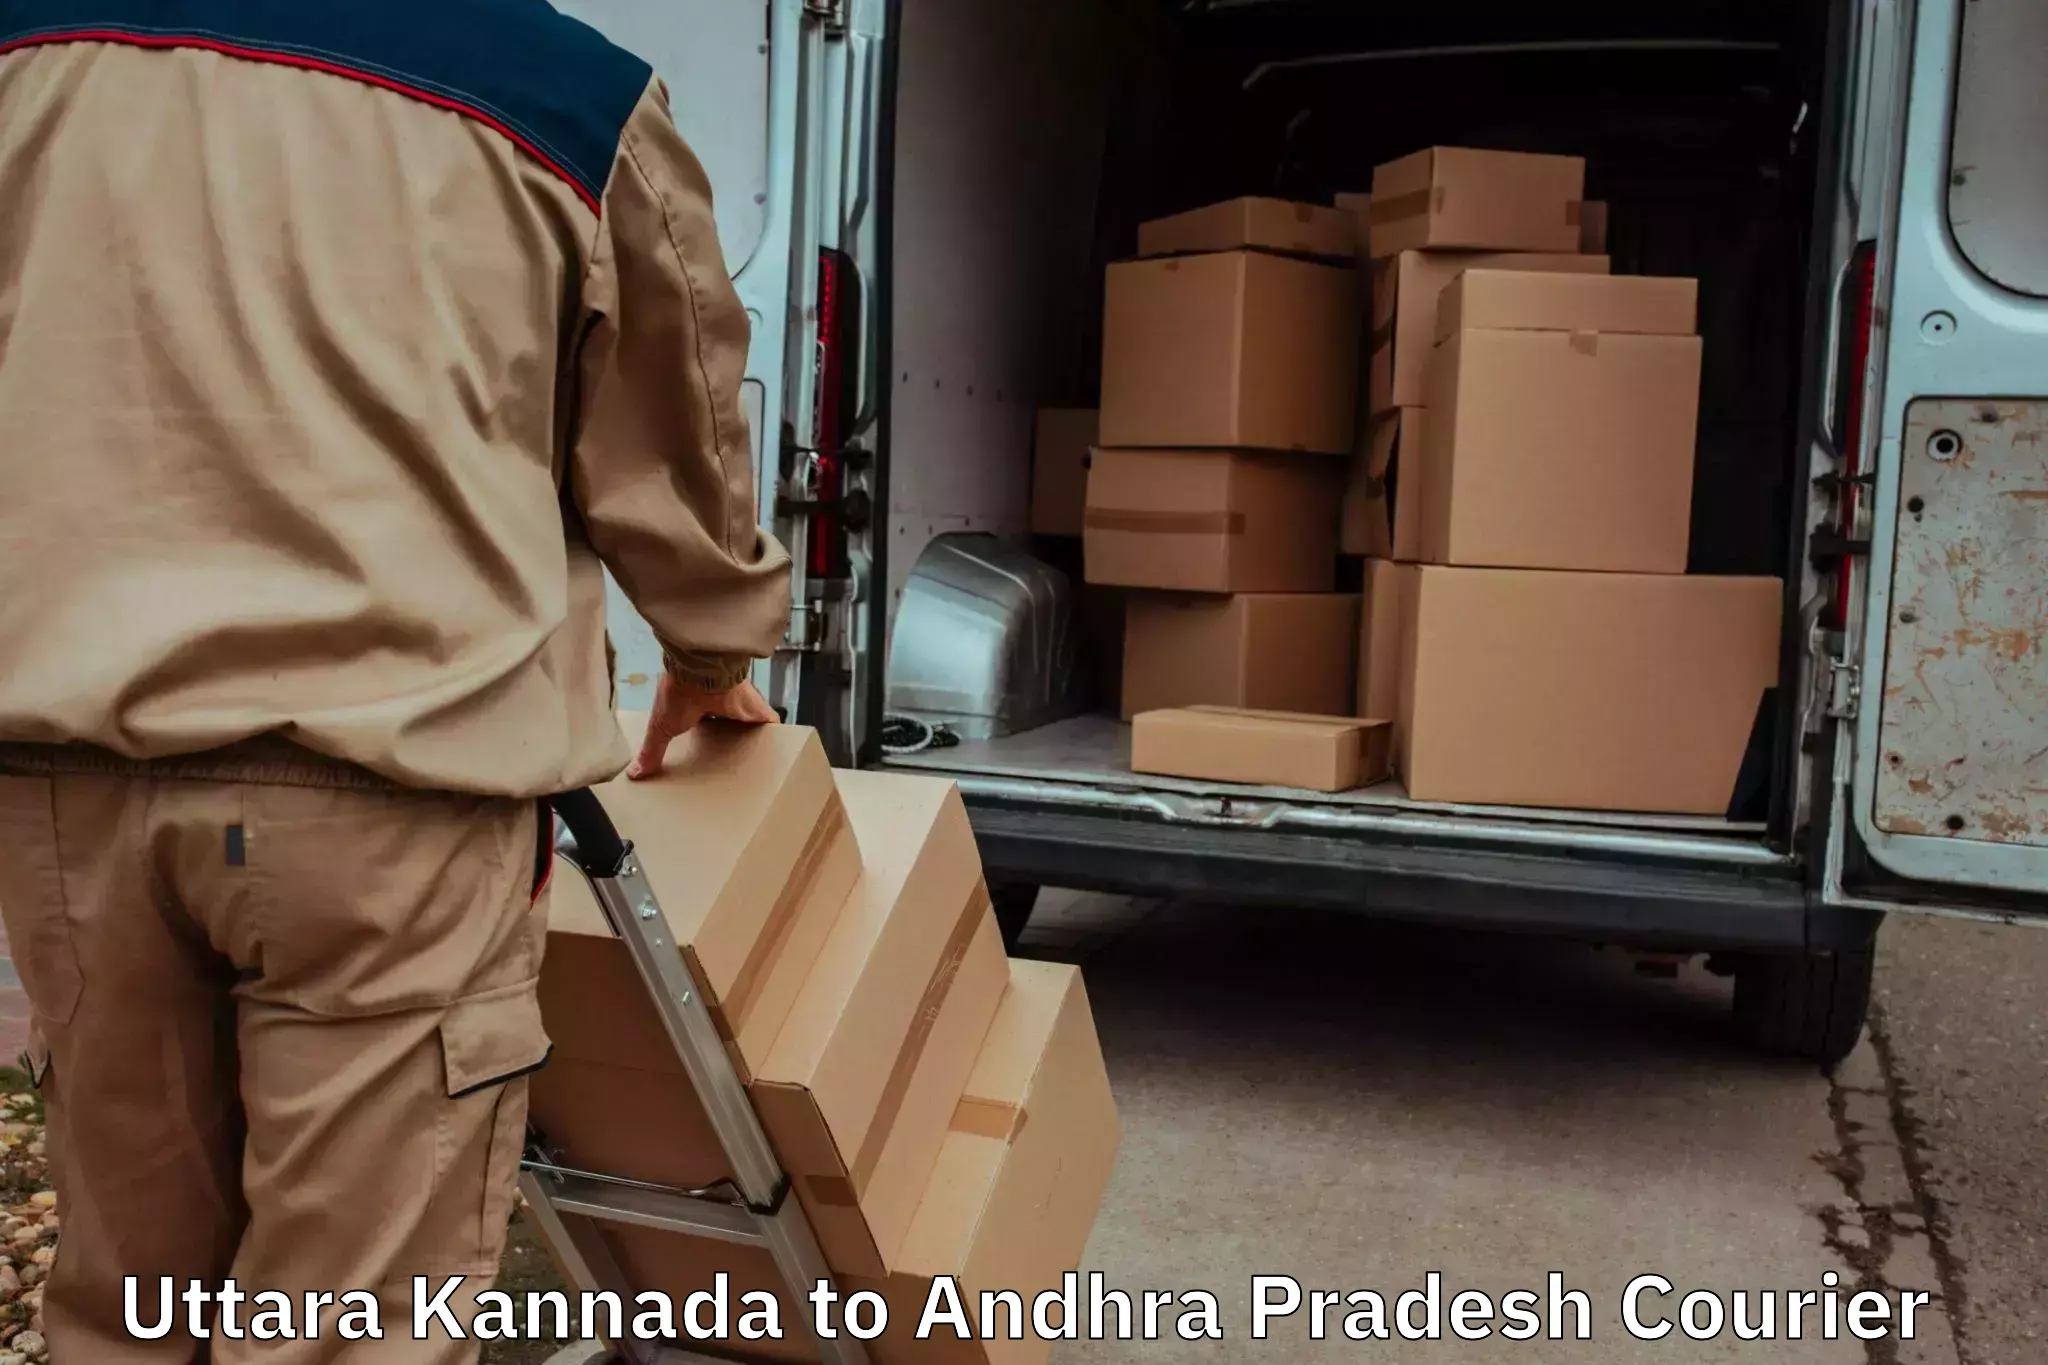 Furniture transport solutions Uttara Kannada to Velgodu